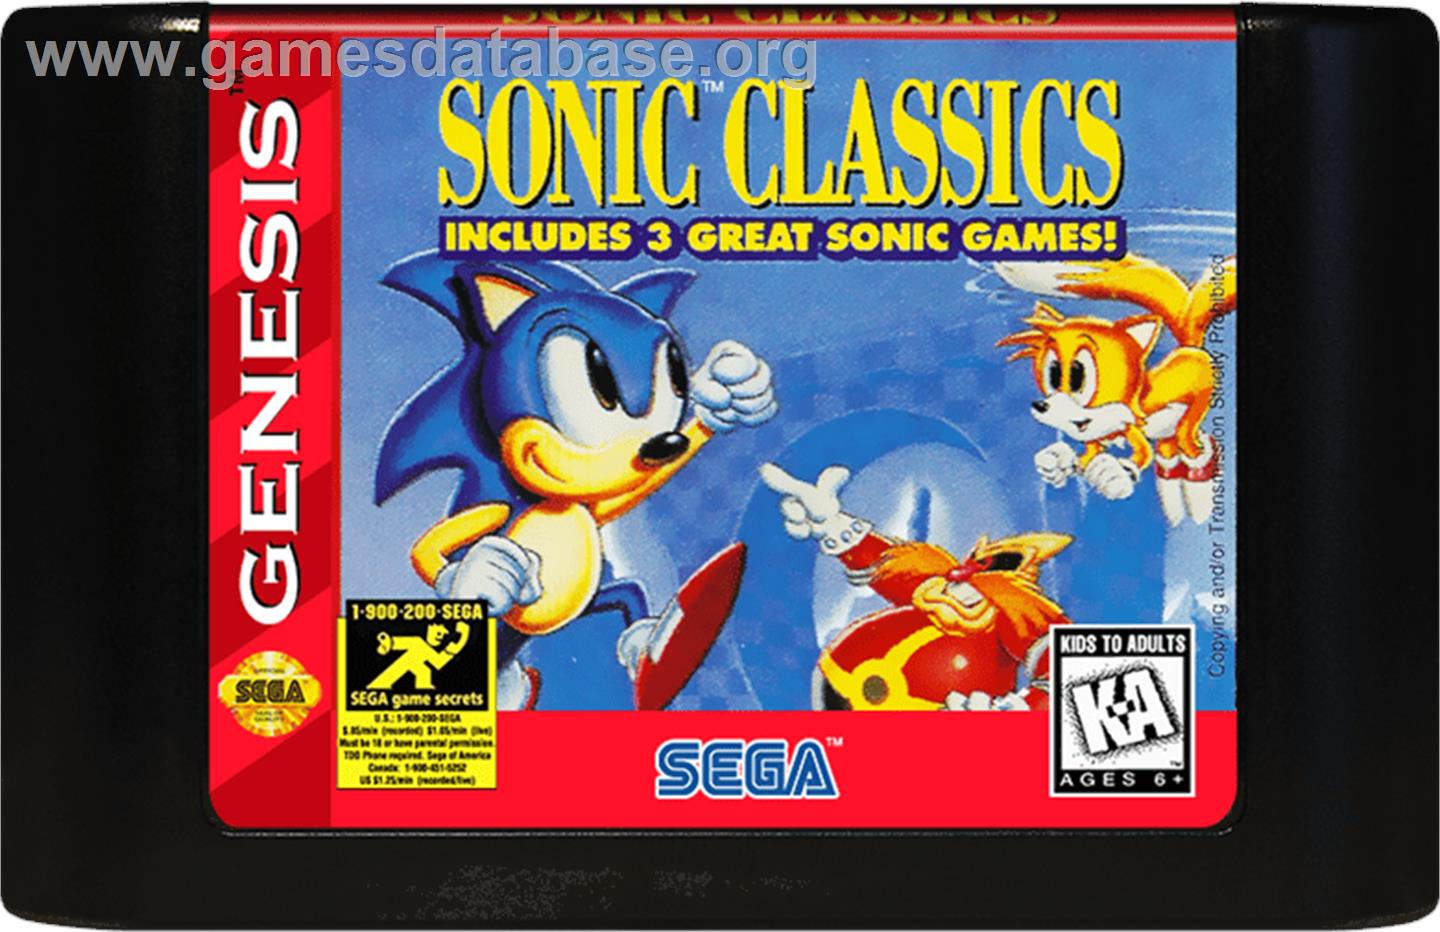 Sonic Classics - Sega Genesis - Artwork - Cartridge